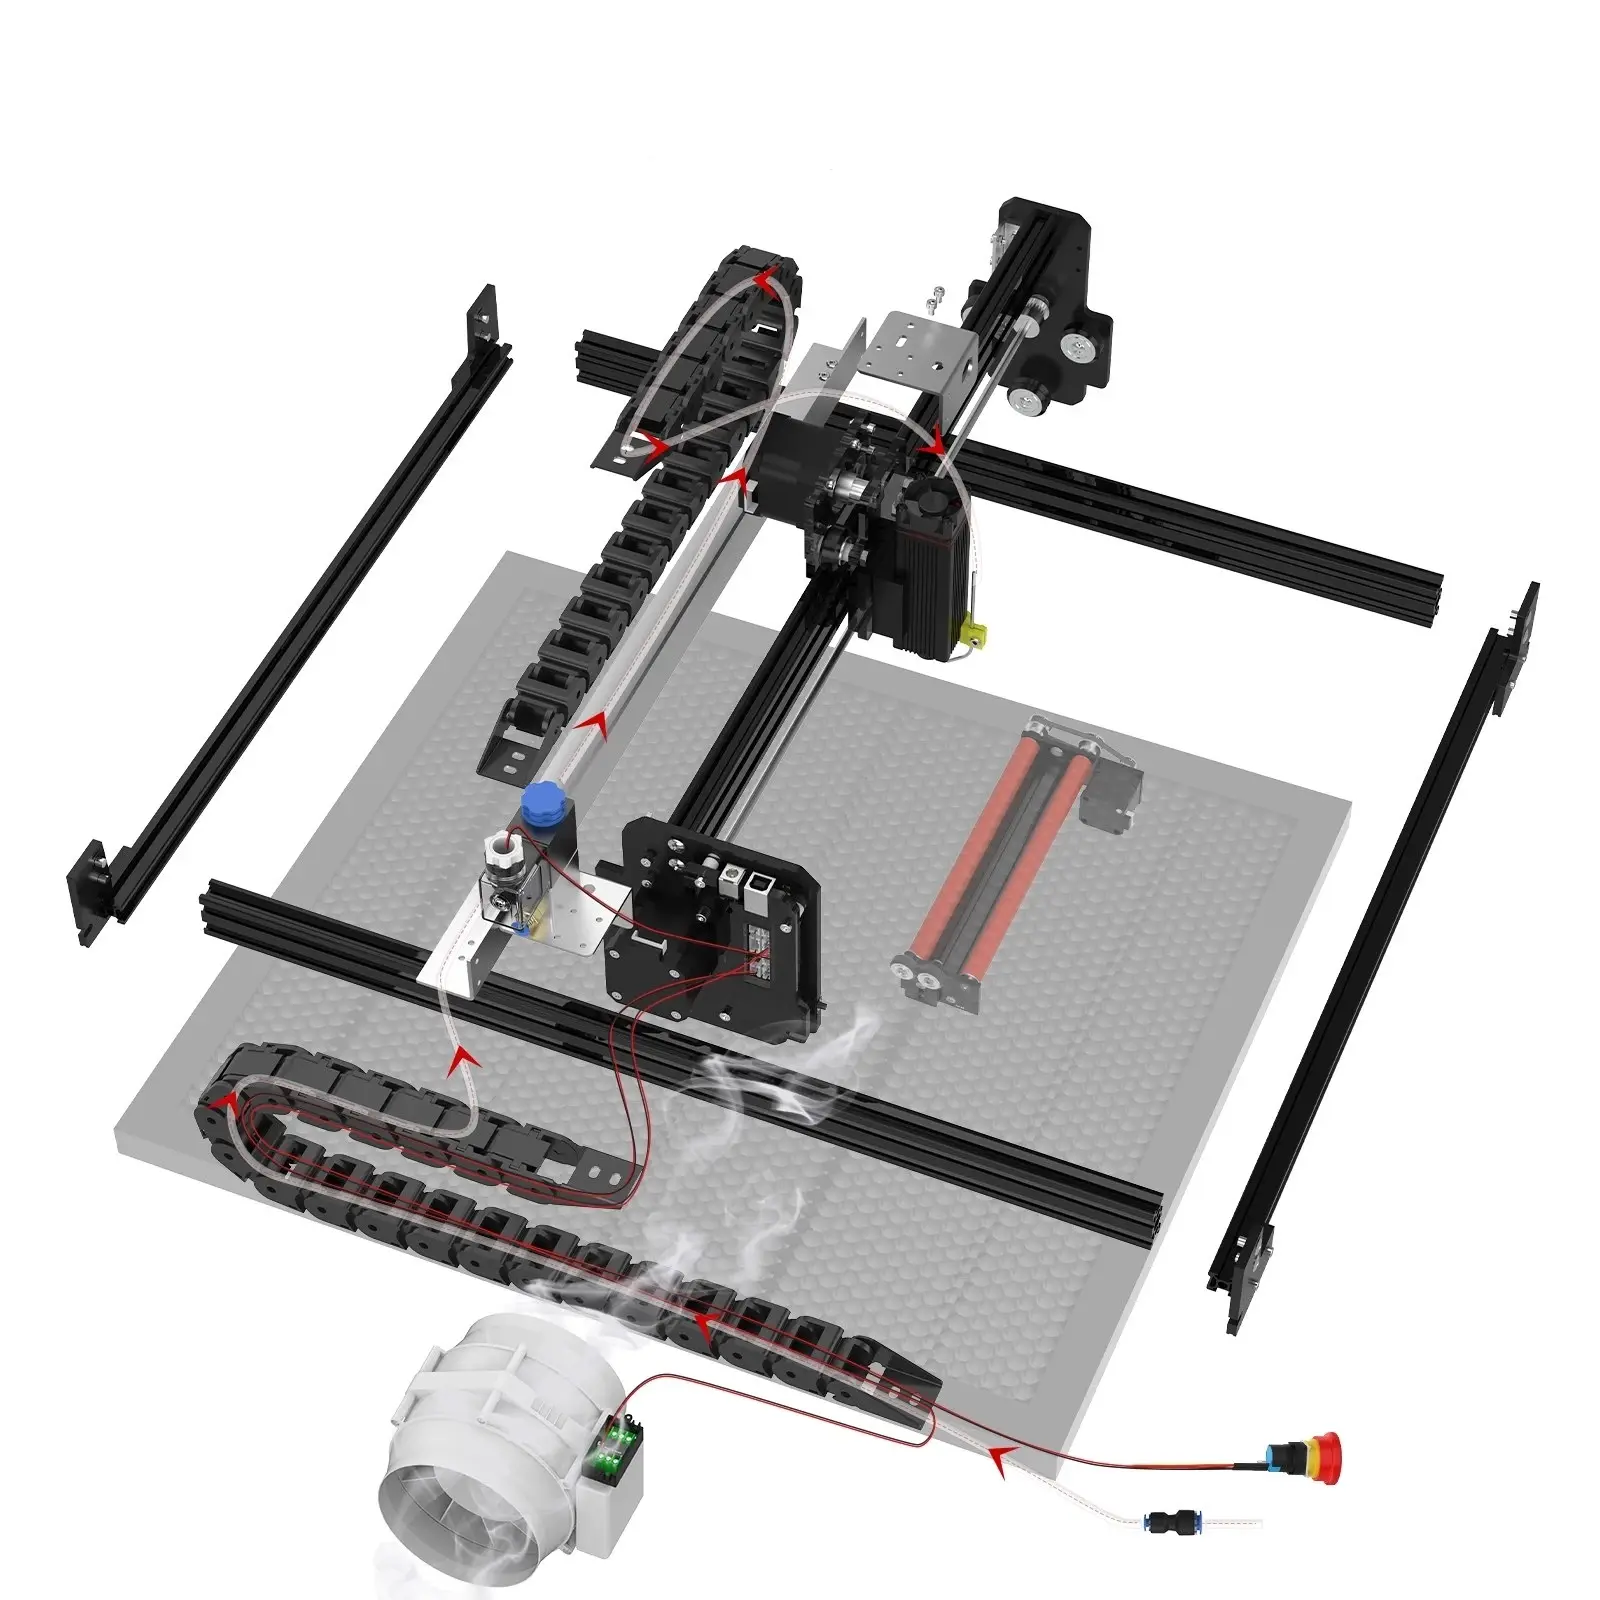 2022 nuova macchina per incisione Laser Desktop Mini taglierina fai da te stampante CNC 400x410mm incisore portatile 40w con rullo rotante asse Y